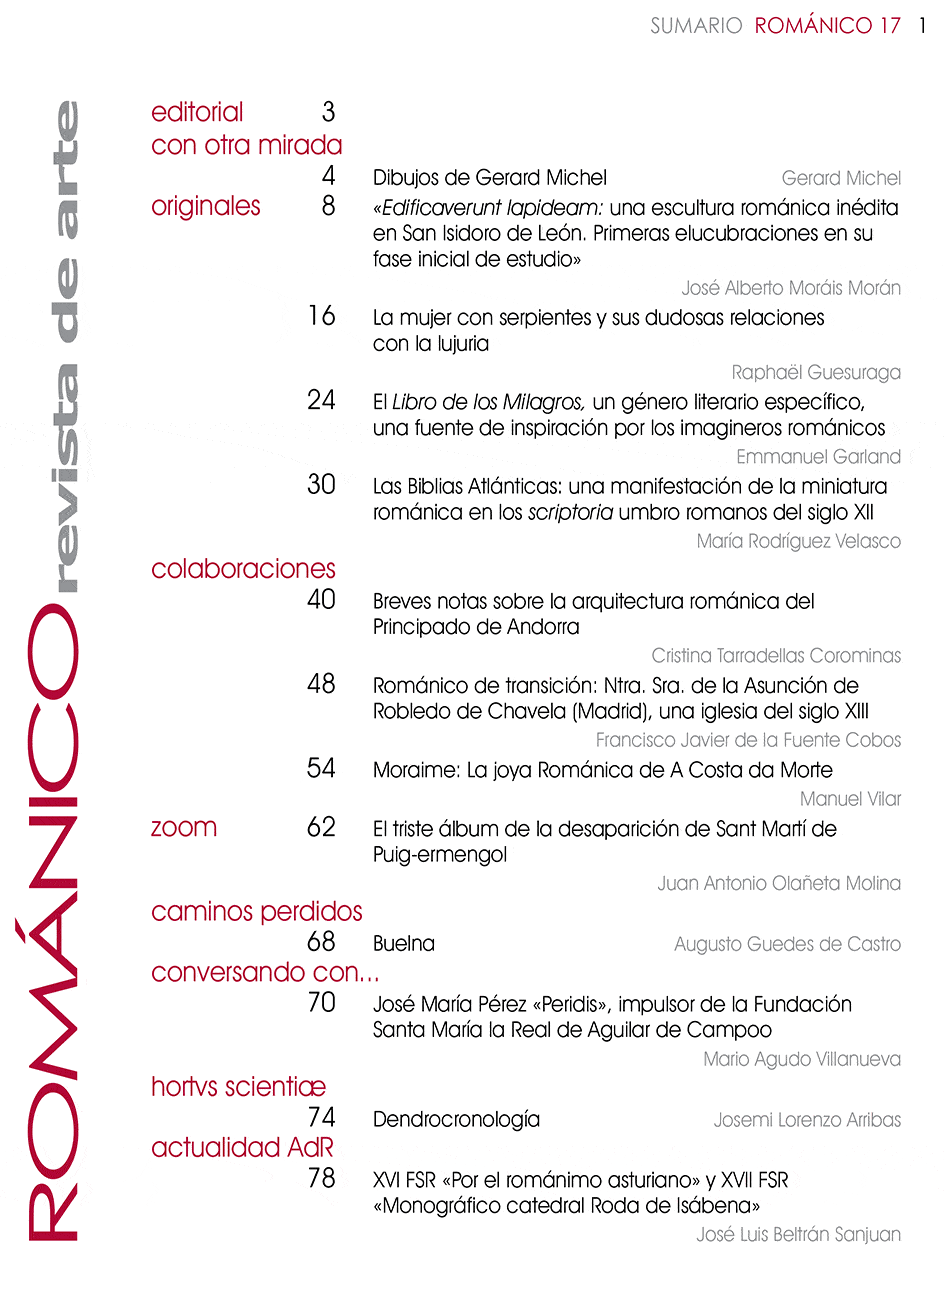 Indice de Contenidos Revista Amigos del Románico Nº17